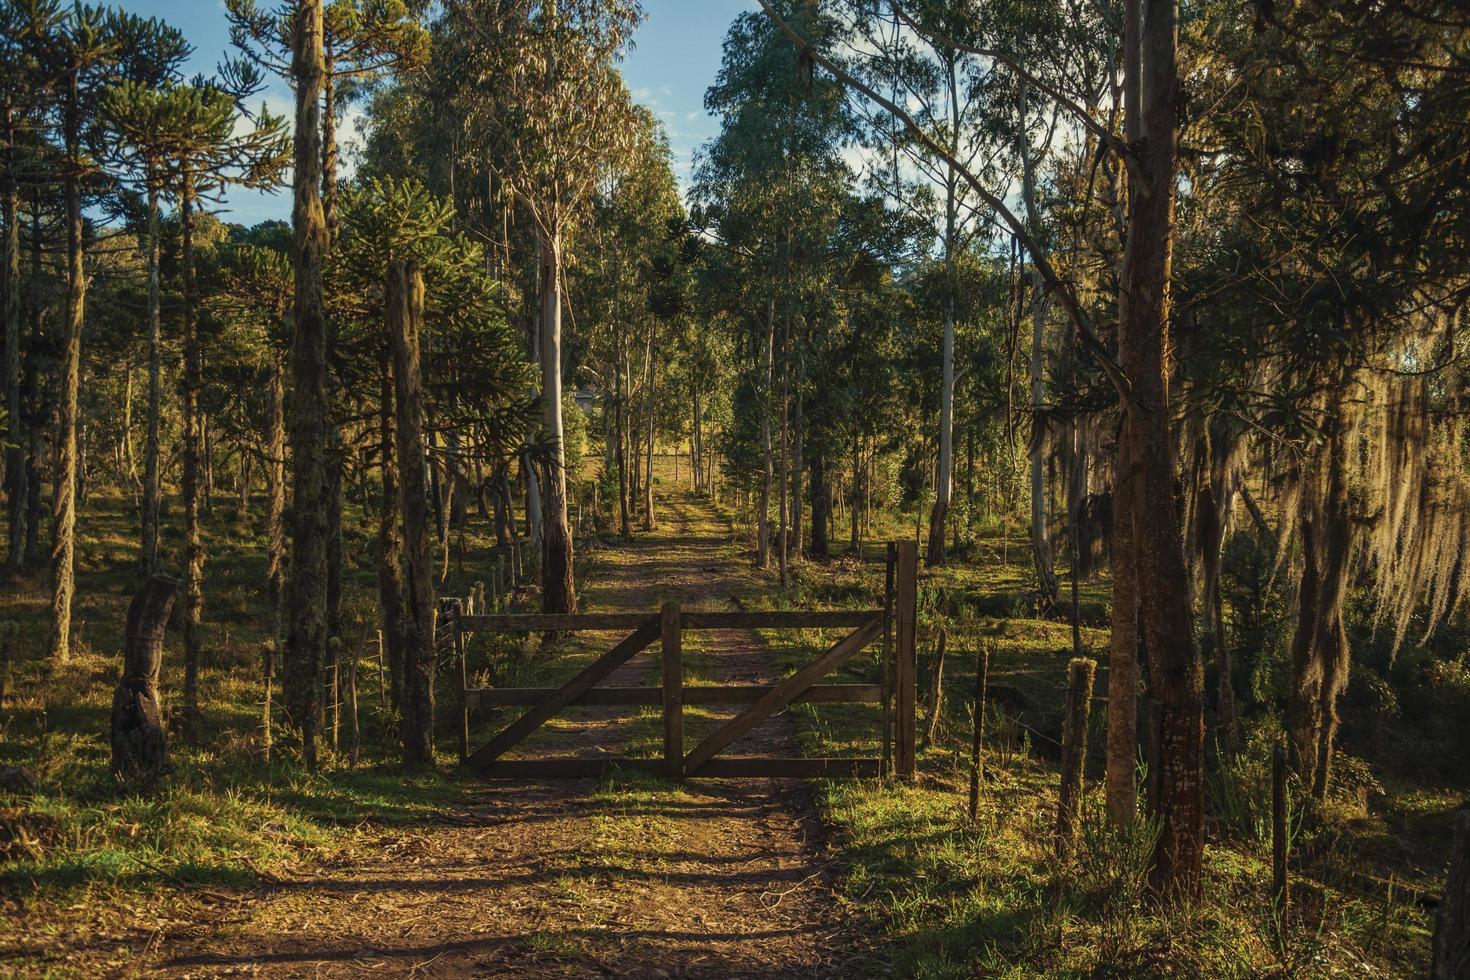 arbres couverts de lichen et d'épiphytes avec porte de ferme en bois sur chemin de terre au coucher du soleil près de cambara do sul. une petite ville de campagne dans le sud du brésil avec des attractions touristiques naturelles étonnantes. photo